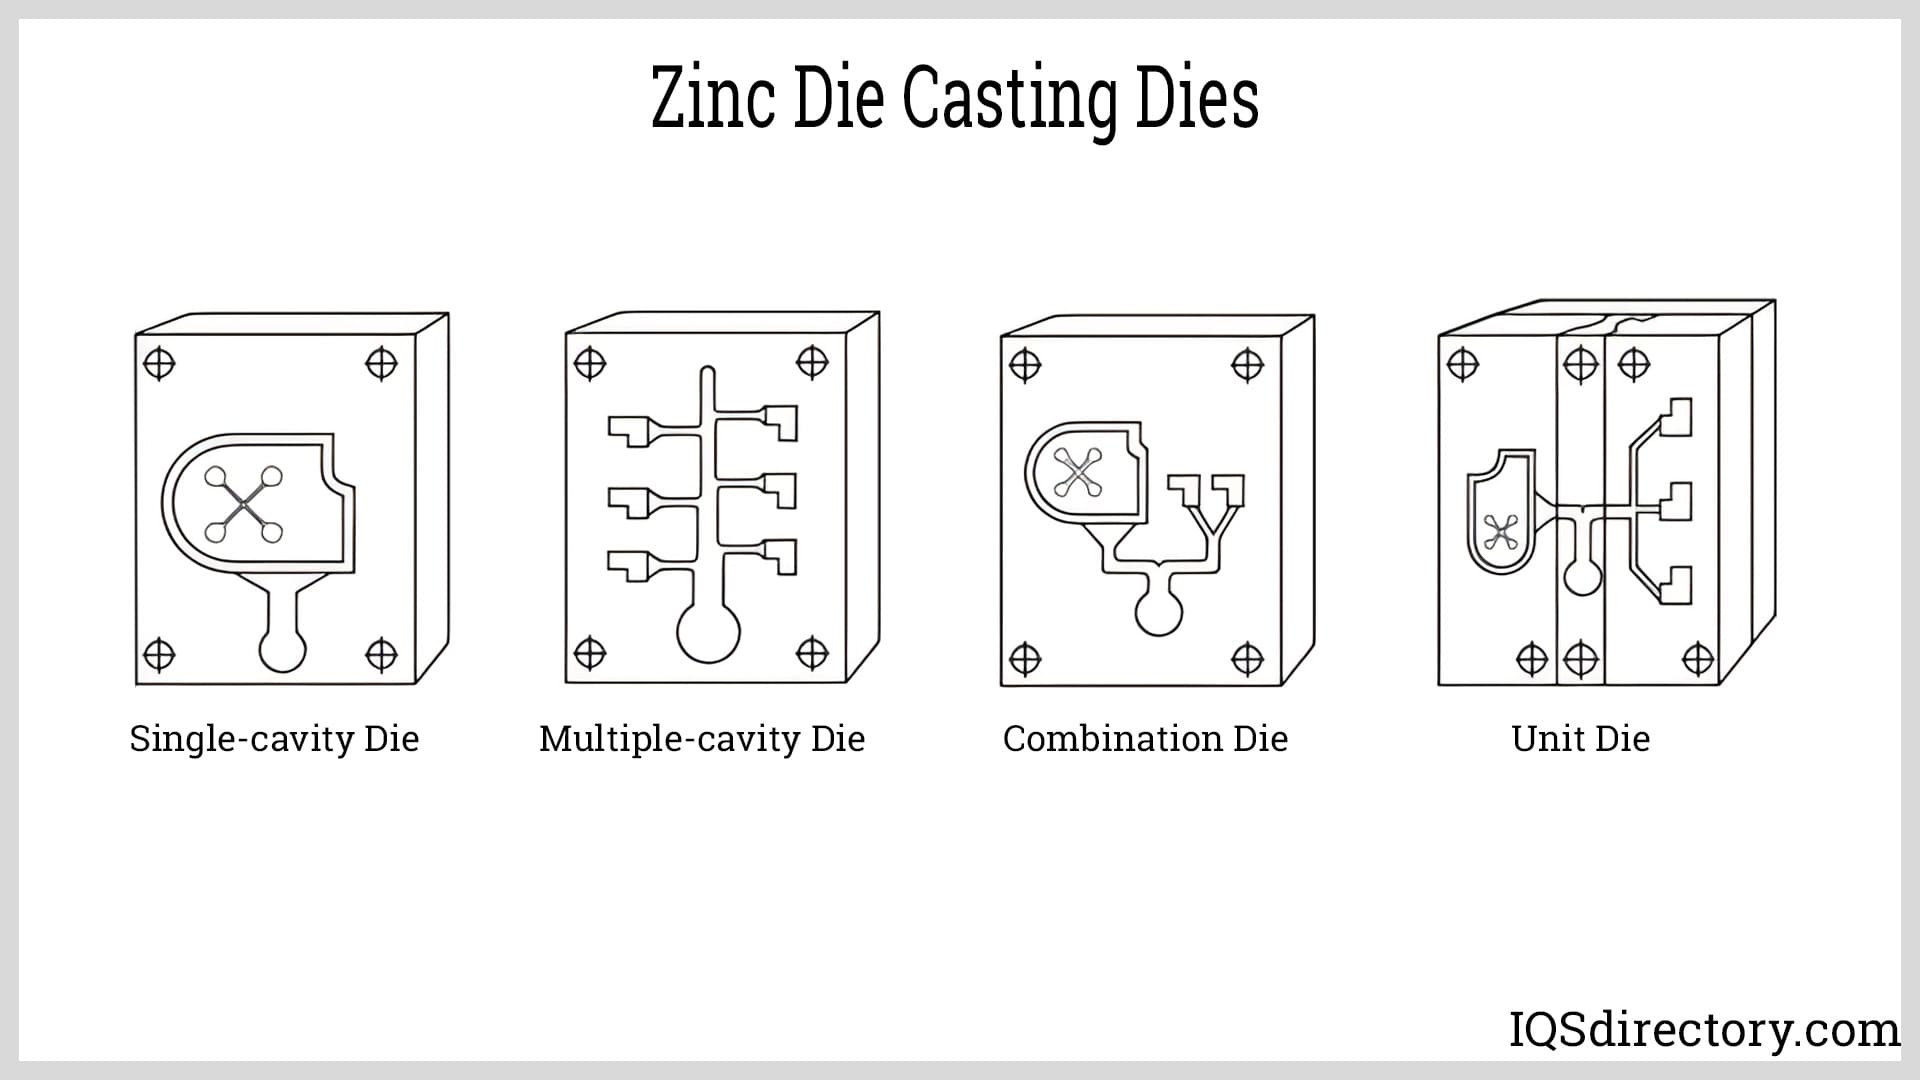 Zinc Die Casting Dies